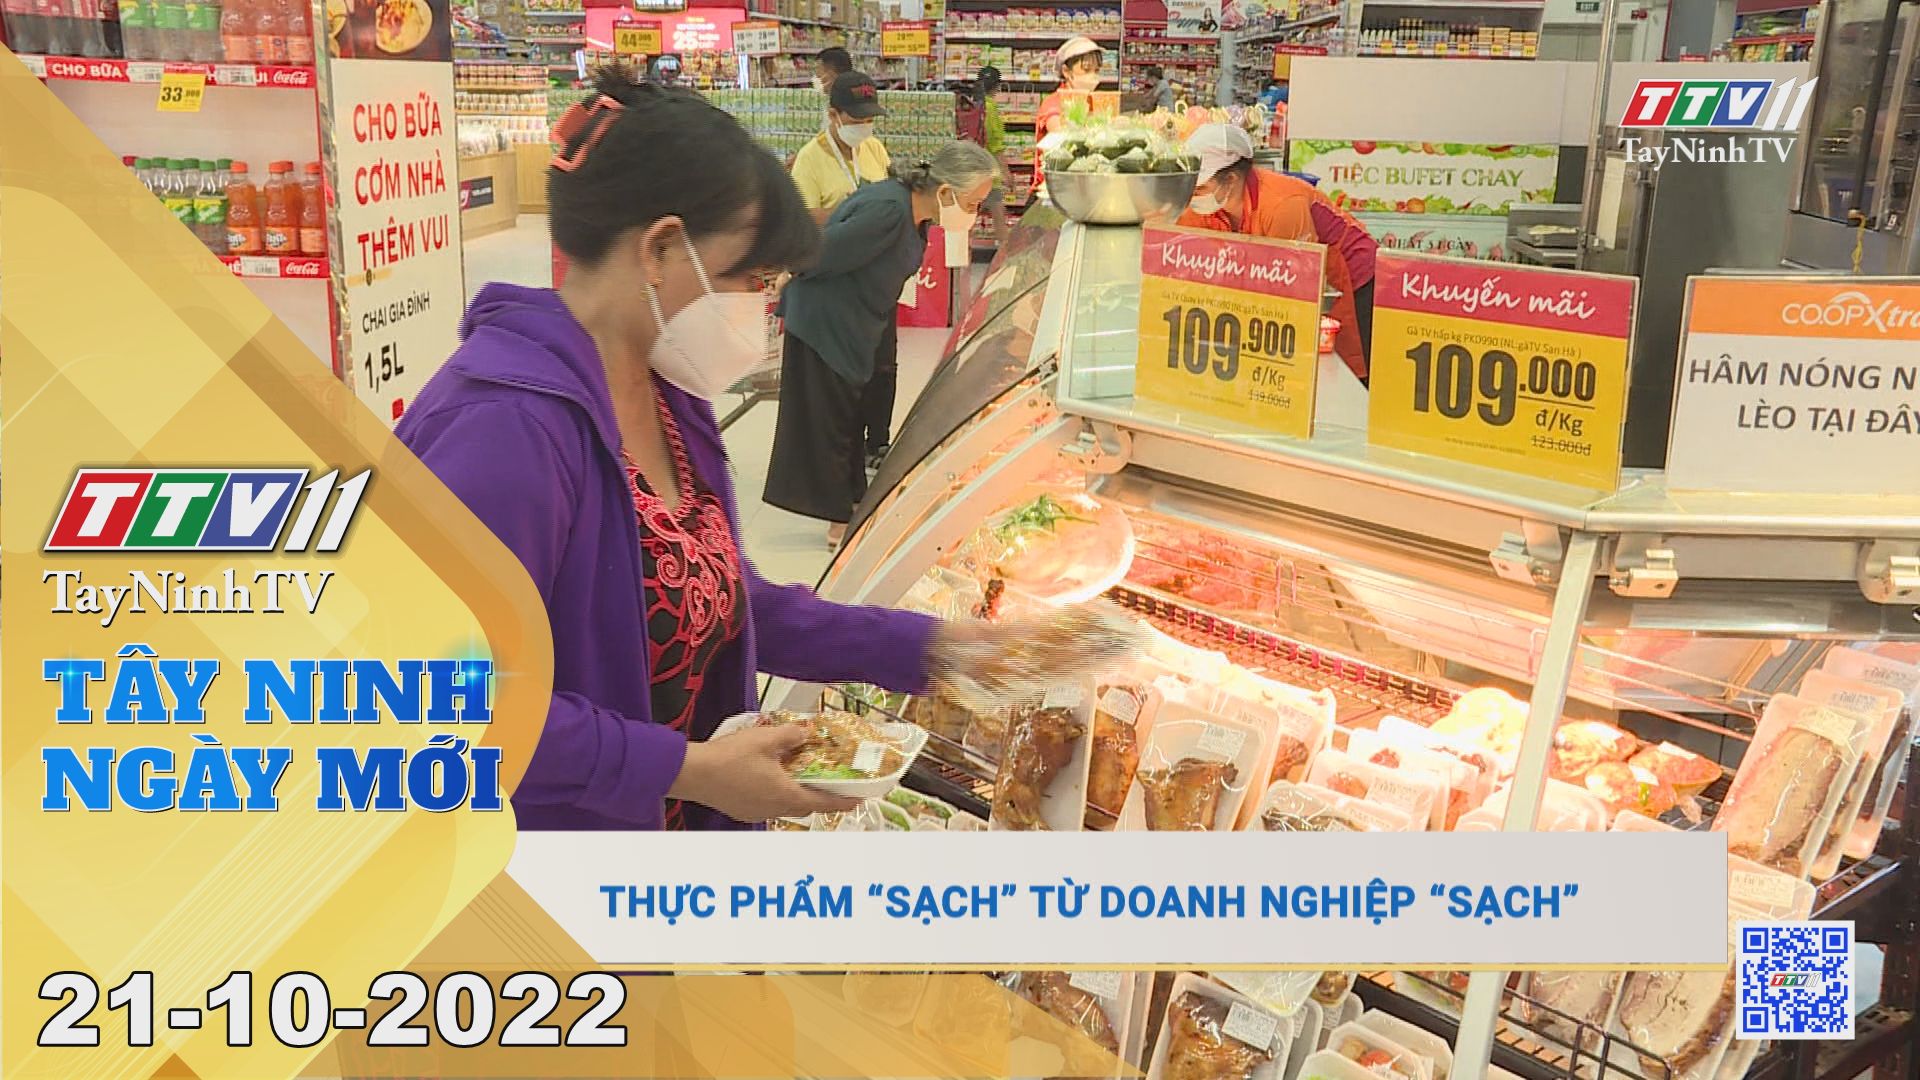 Tây Ninh ngày mới 21-10-2022 | Tin tức hôm nay | TayNinhTV